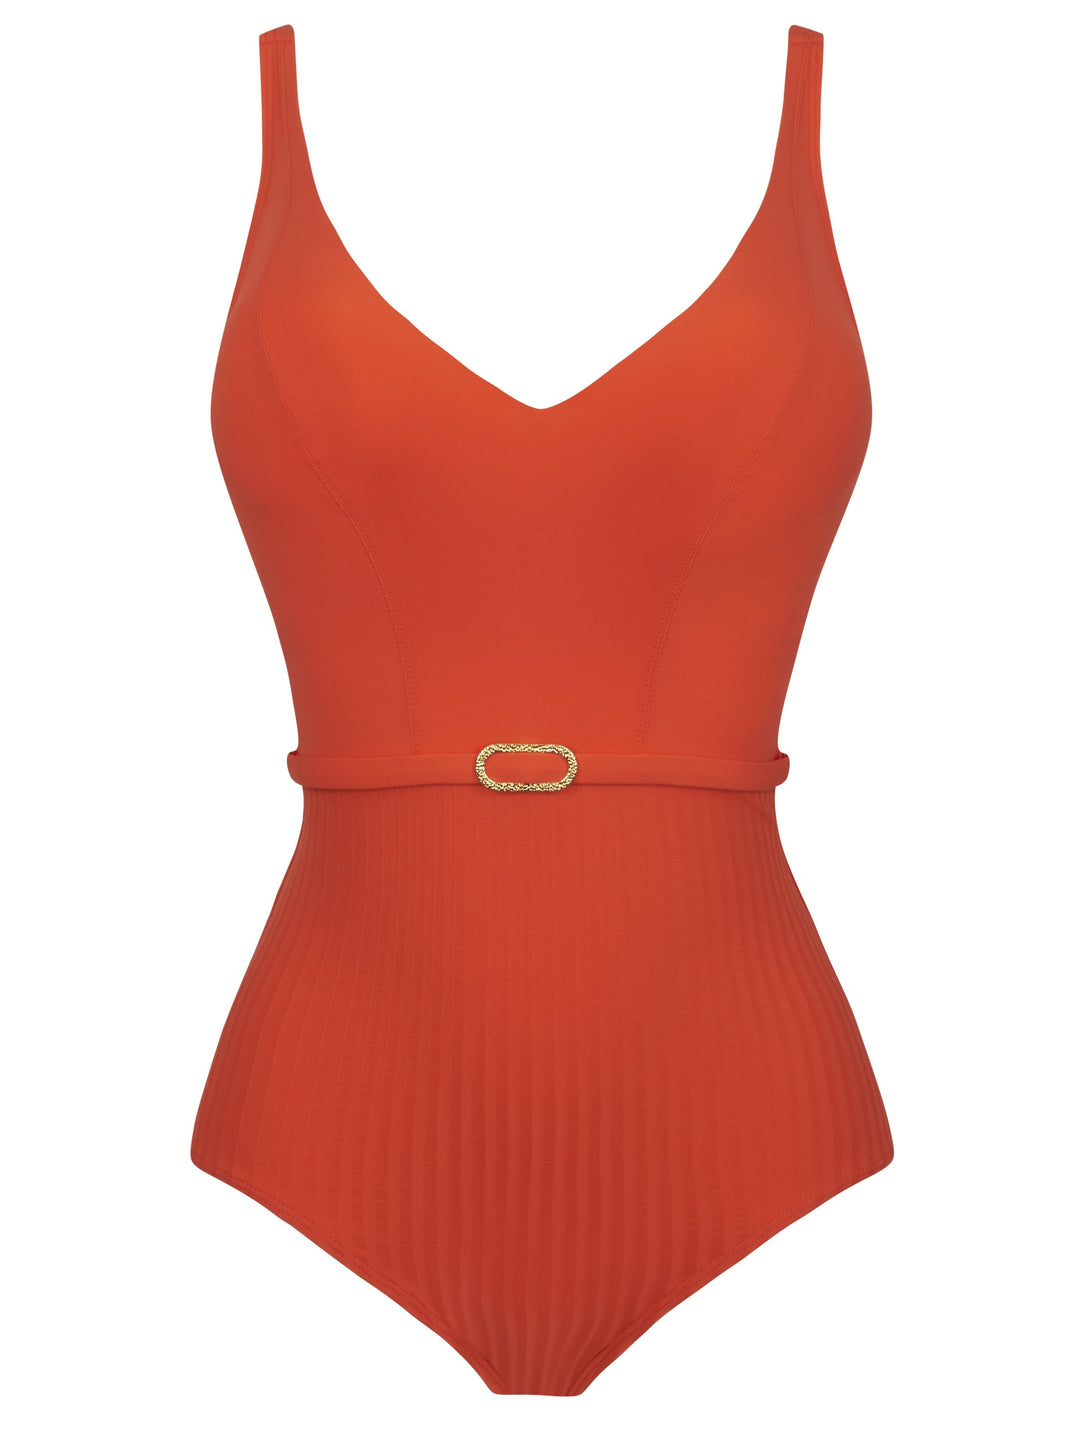 Empreinte - Iconic Купальник на косточках с V-образным вырезом Купальник Tangerine с глубоким вырезом Empreinte Swimwear